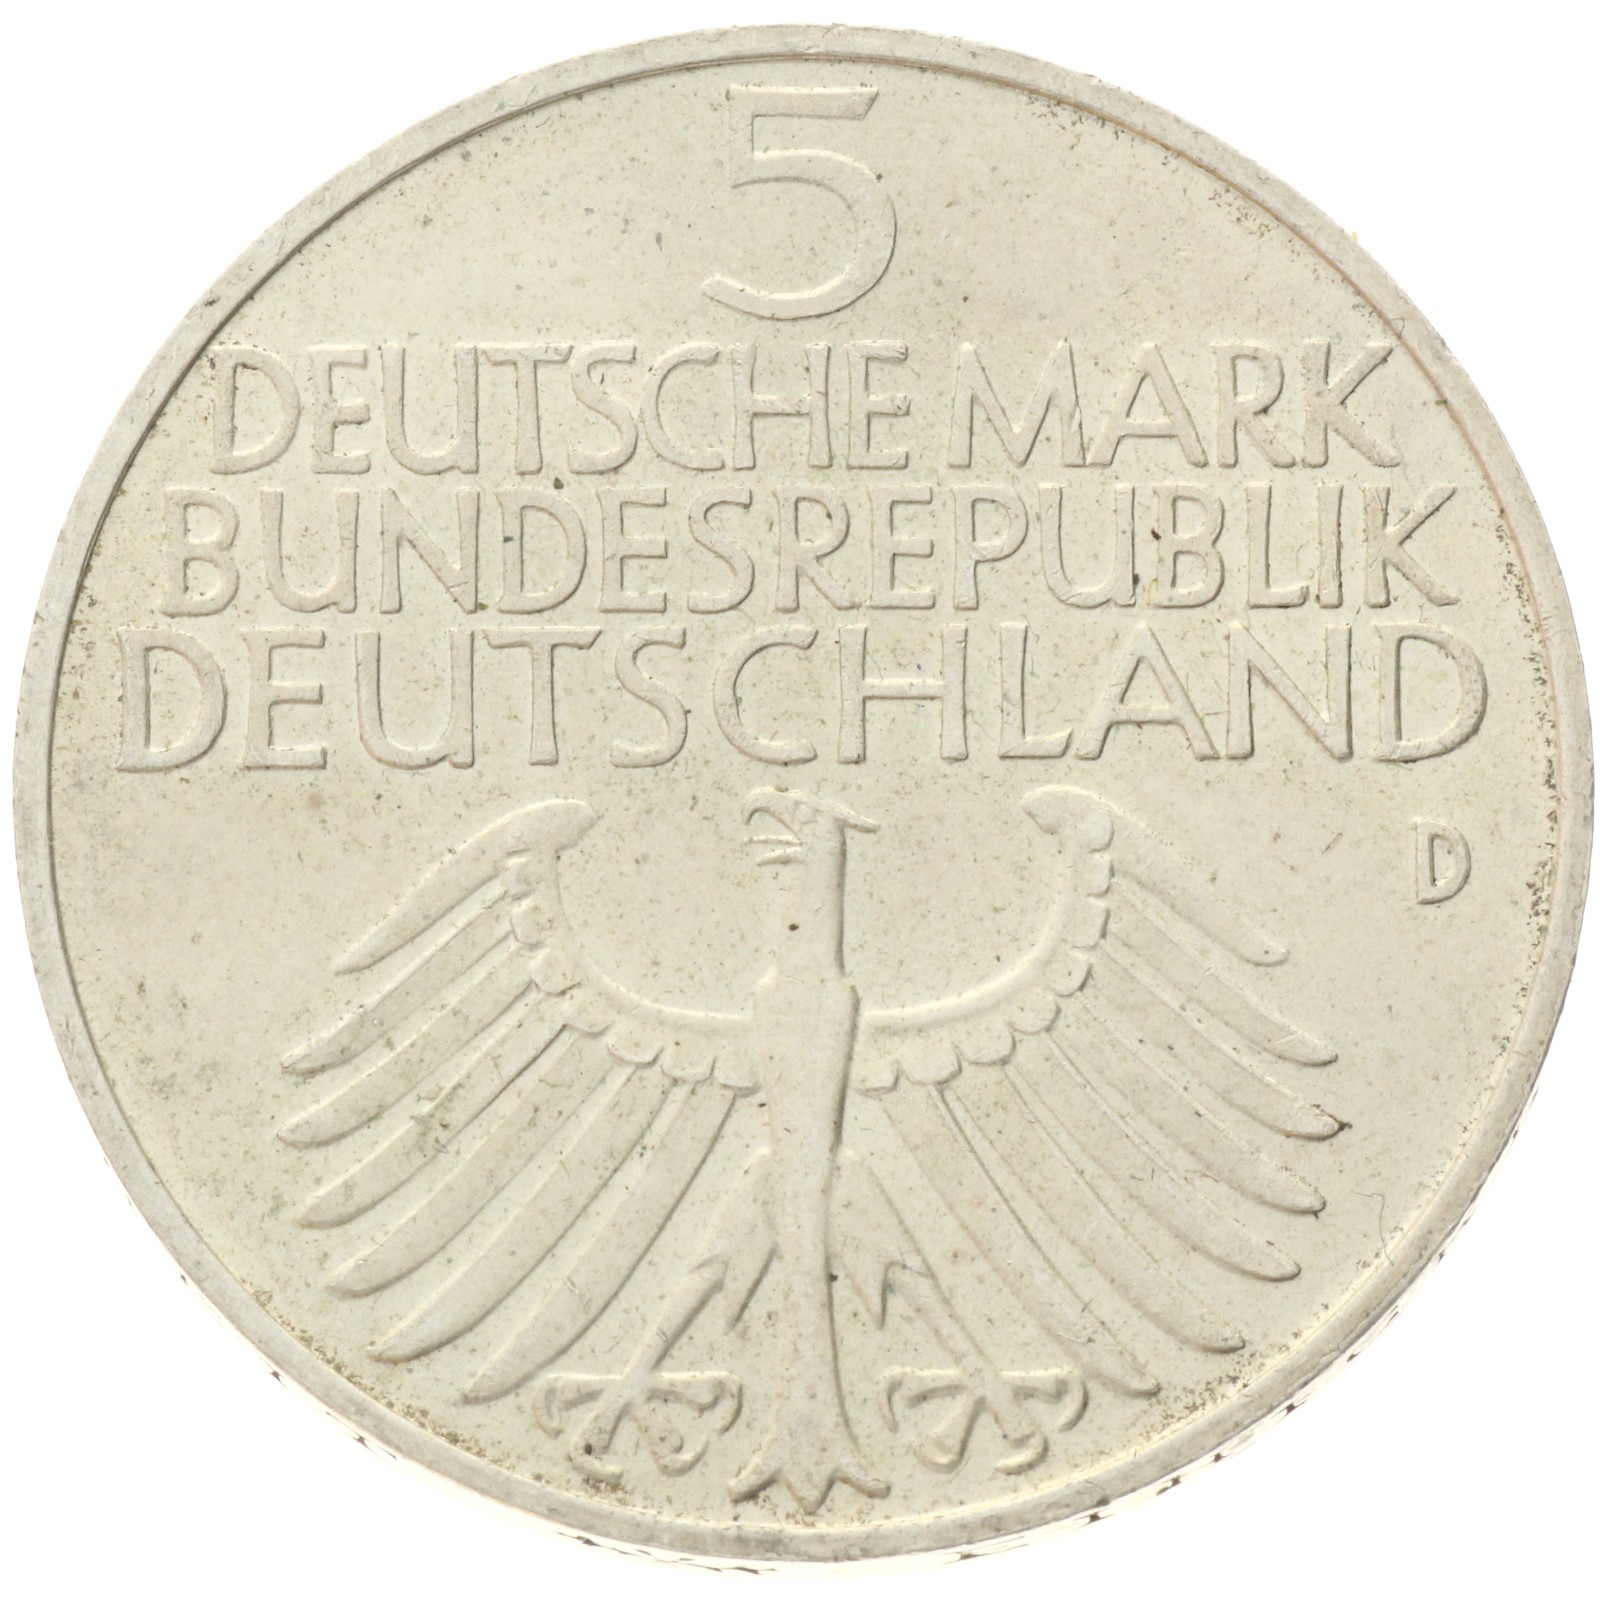 Germany - 5 Deutsche Mark - 1952 - Germanic Museum